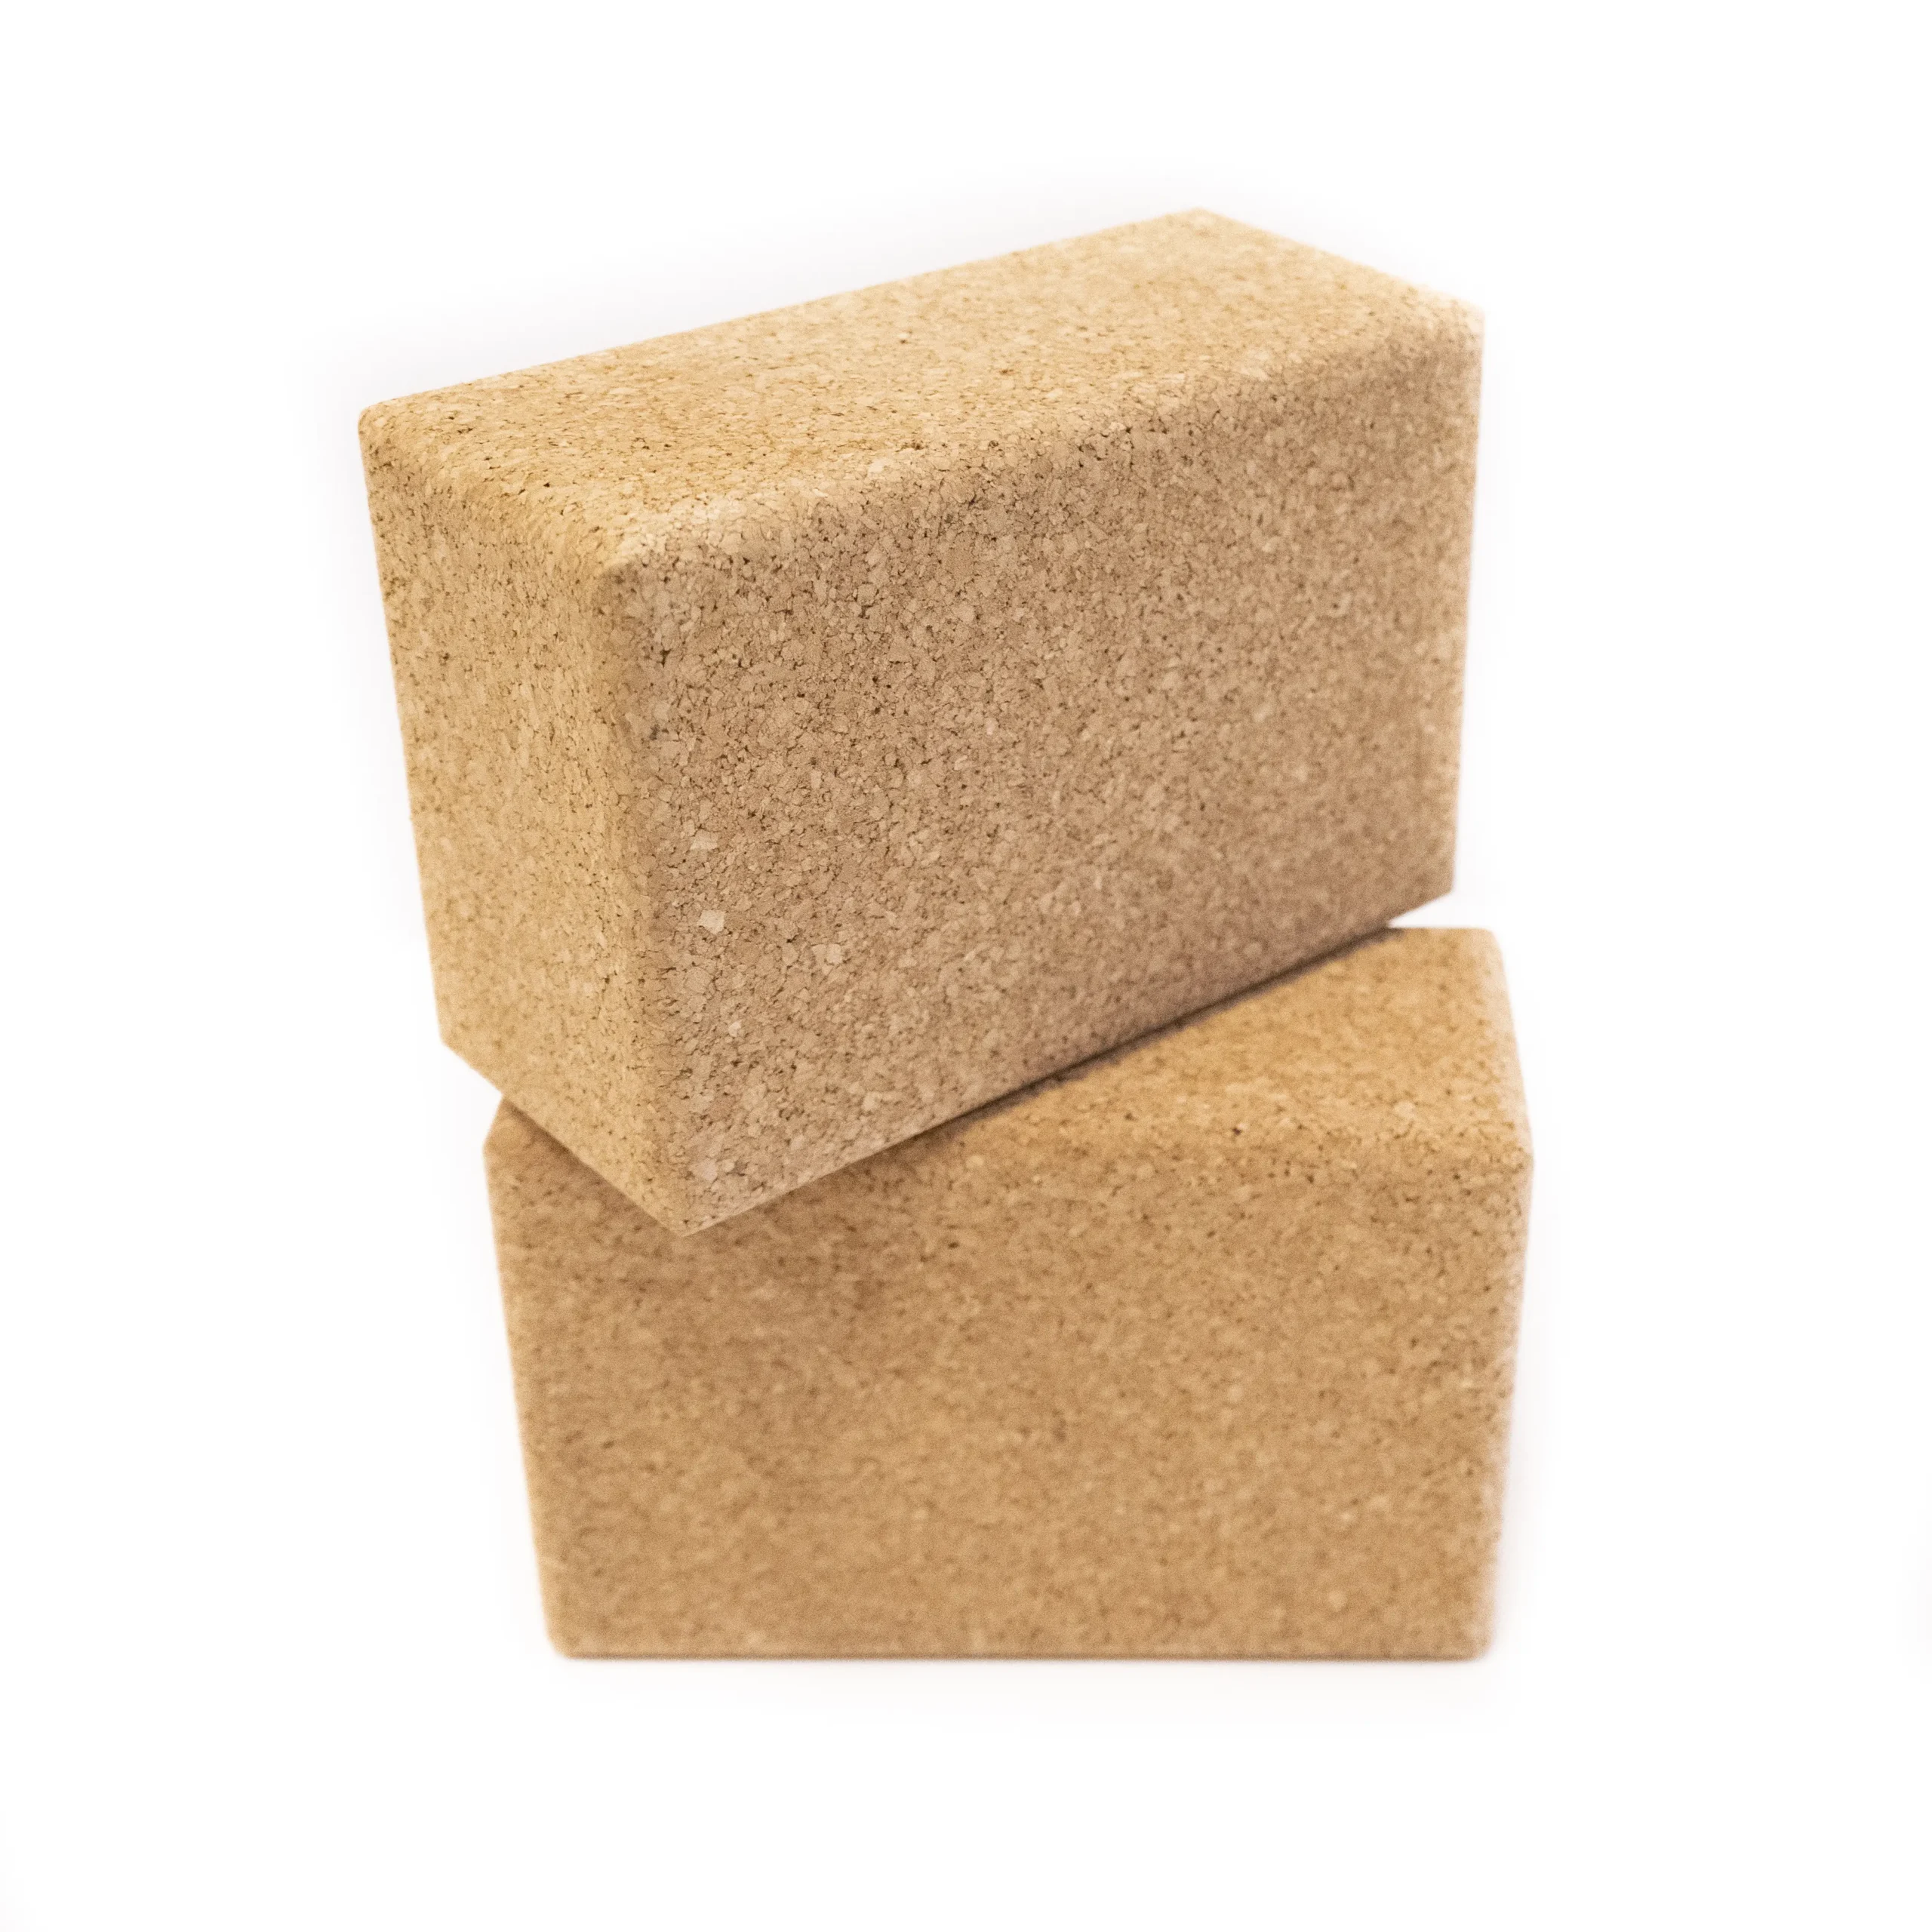 cork yoga brick - What is a cork yoga brick